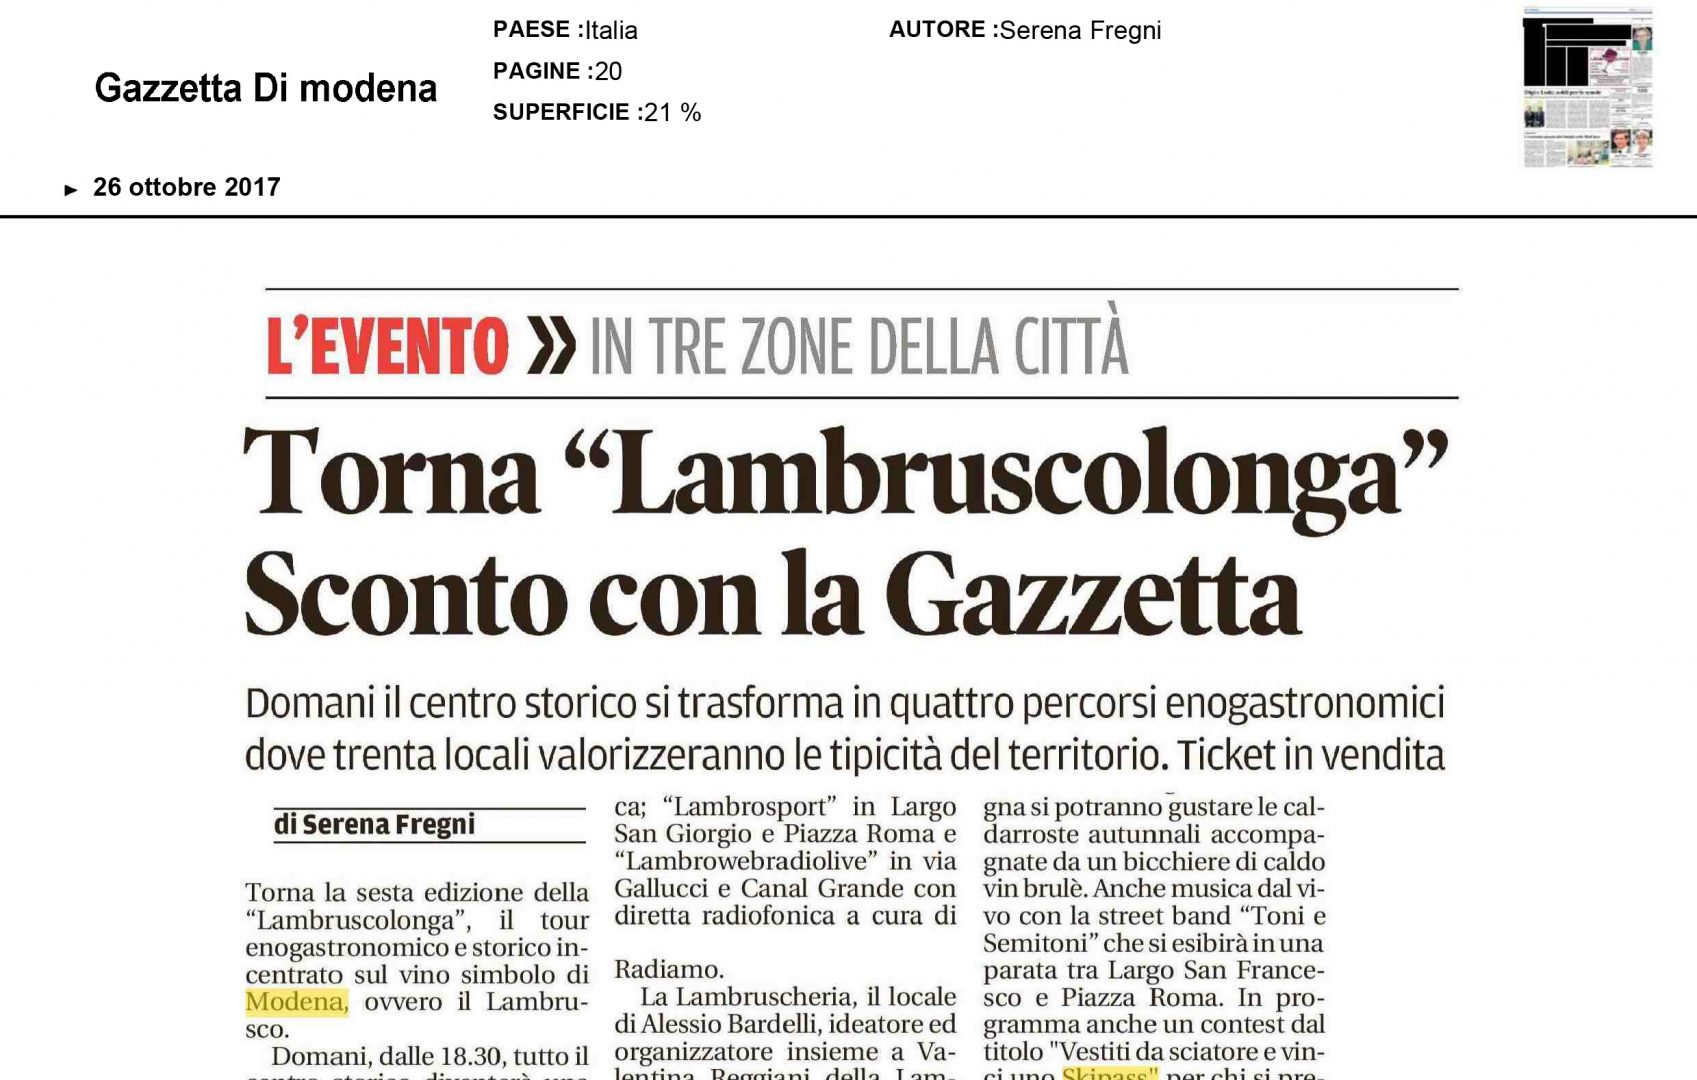 26 Ottobre 2017 - Gazzetta di Modena